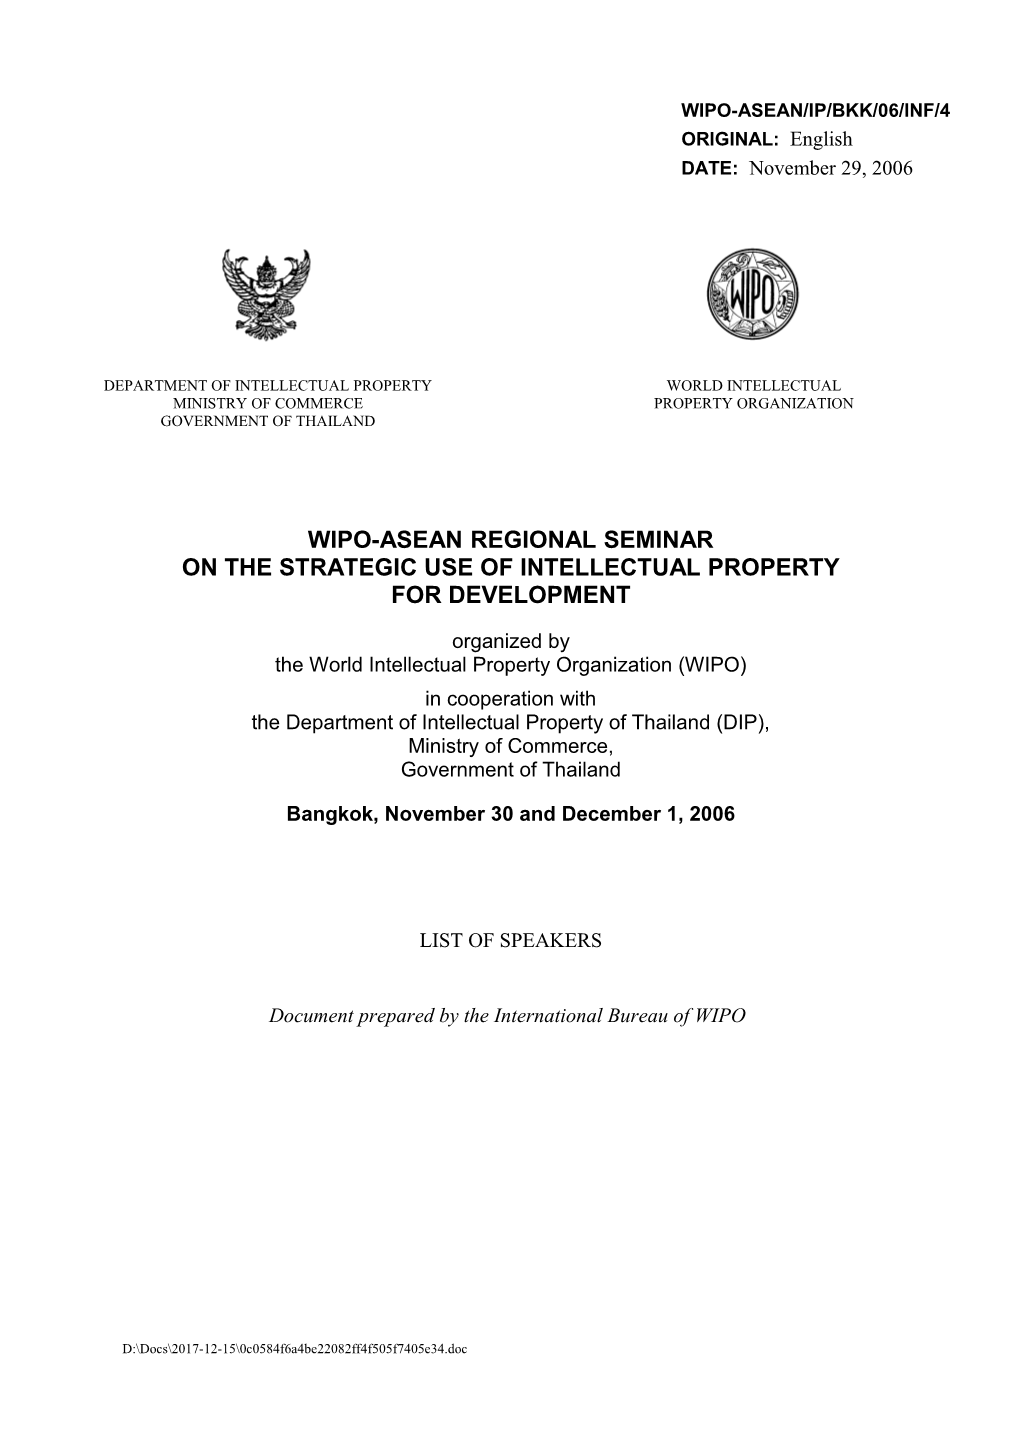 WIPO-ASEAN/IP/BKK/06/INF/4: List of Speakers